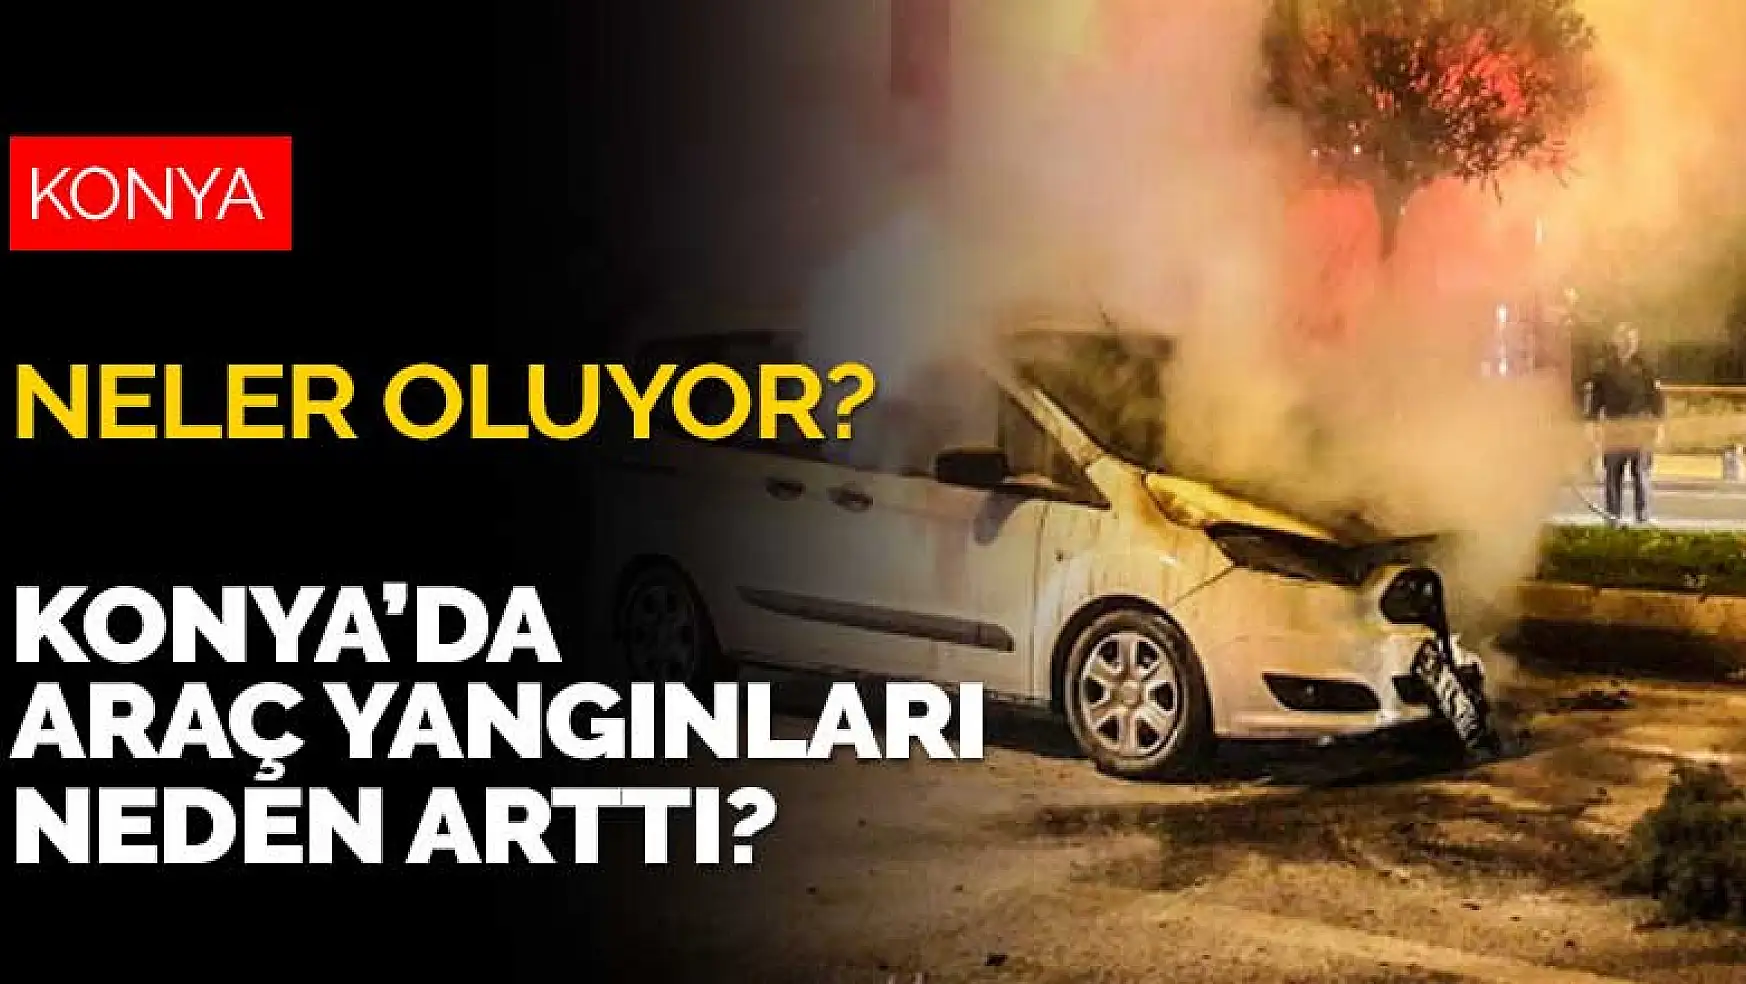 Konya'ya neler oluyor? Konya'da araç yangınları neden arttı?